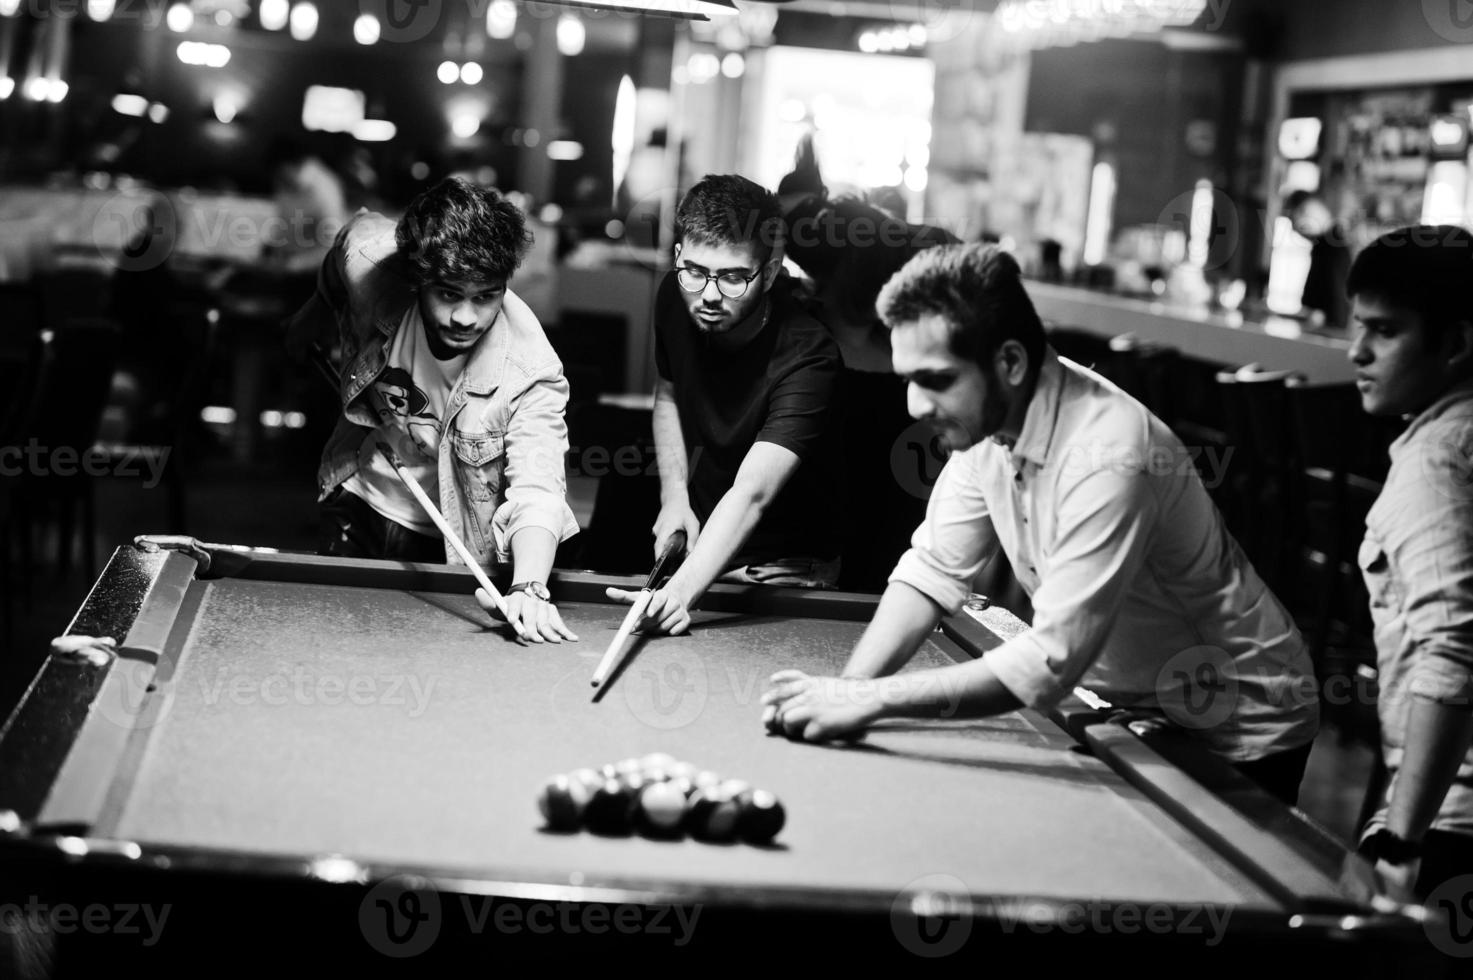 grupo de elegantes amigos asiáticos usan jeans jugando al billar en el bar. foto